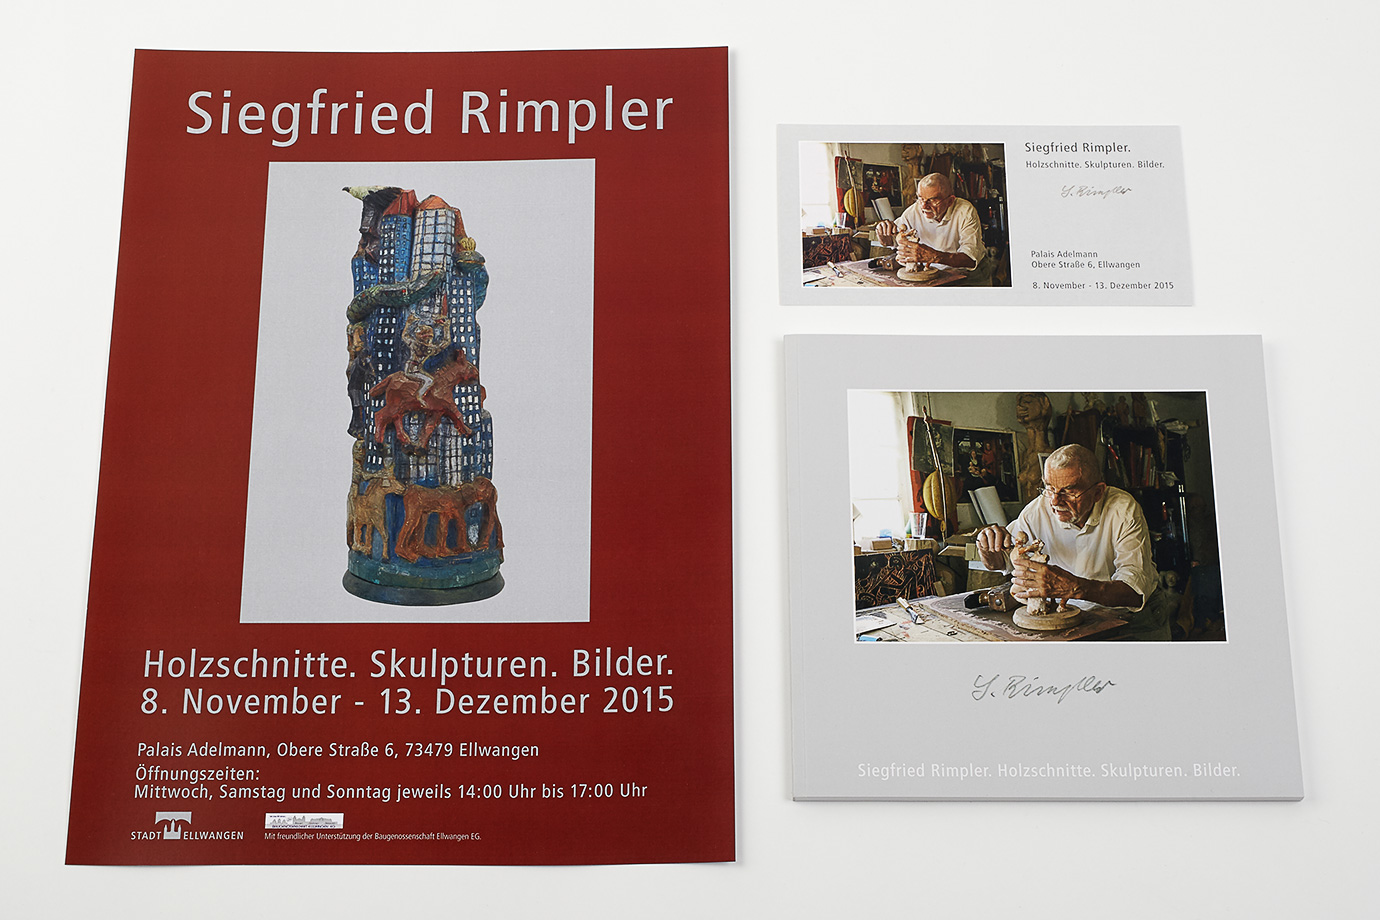 Siegfried Rimpler. Ausstellung: Holzschnitte. Skulpturen. Bilder. Gestaltung Plakat, Einladung, Katalog.